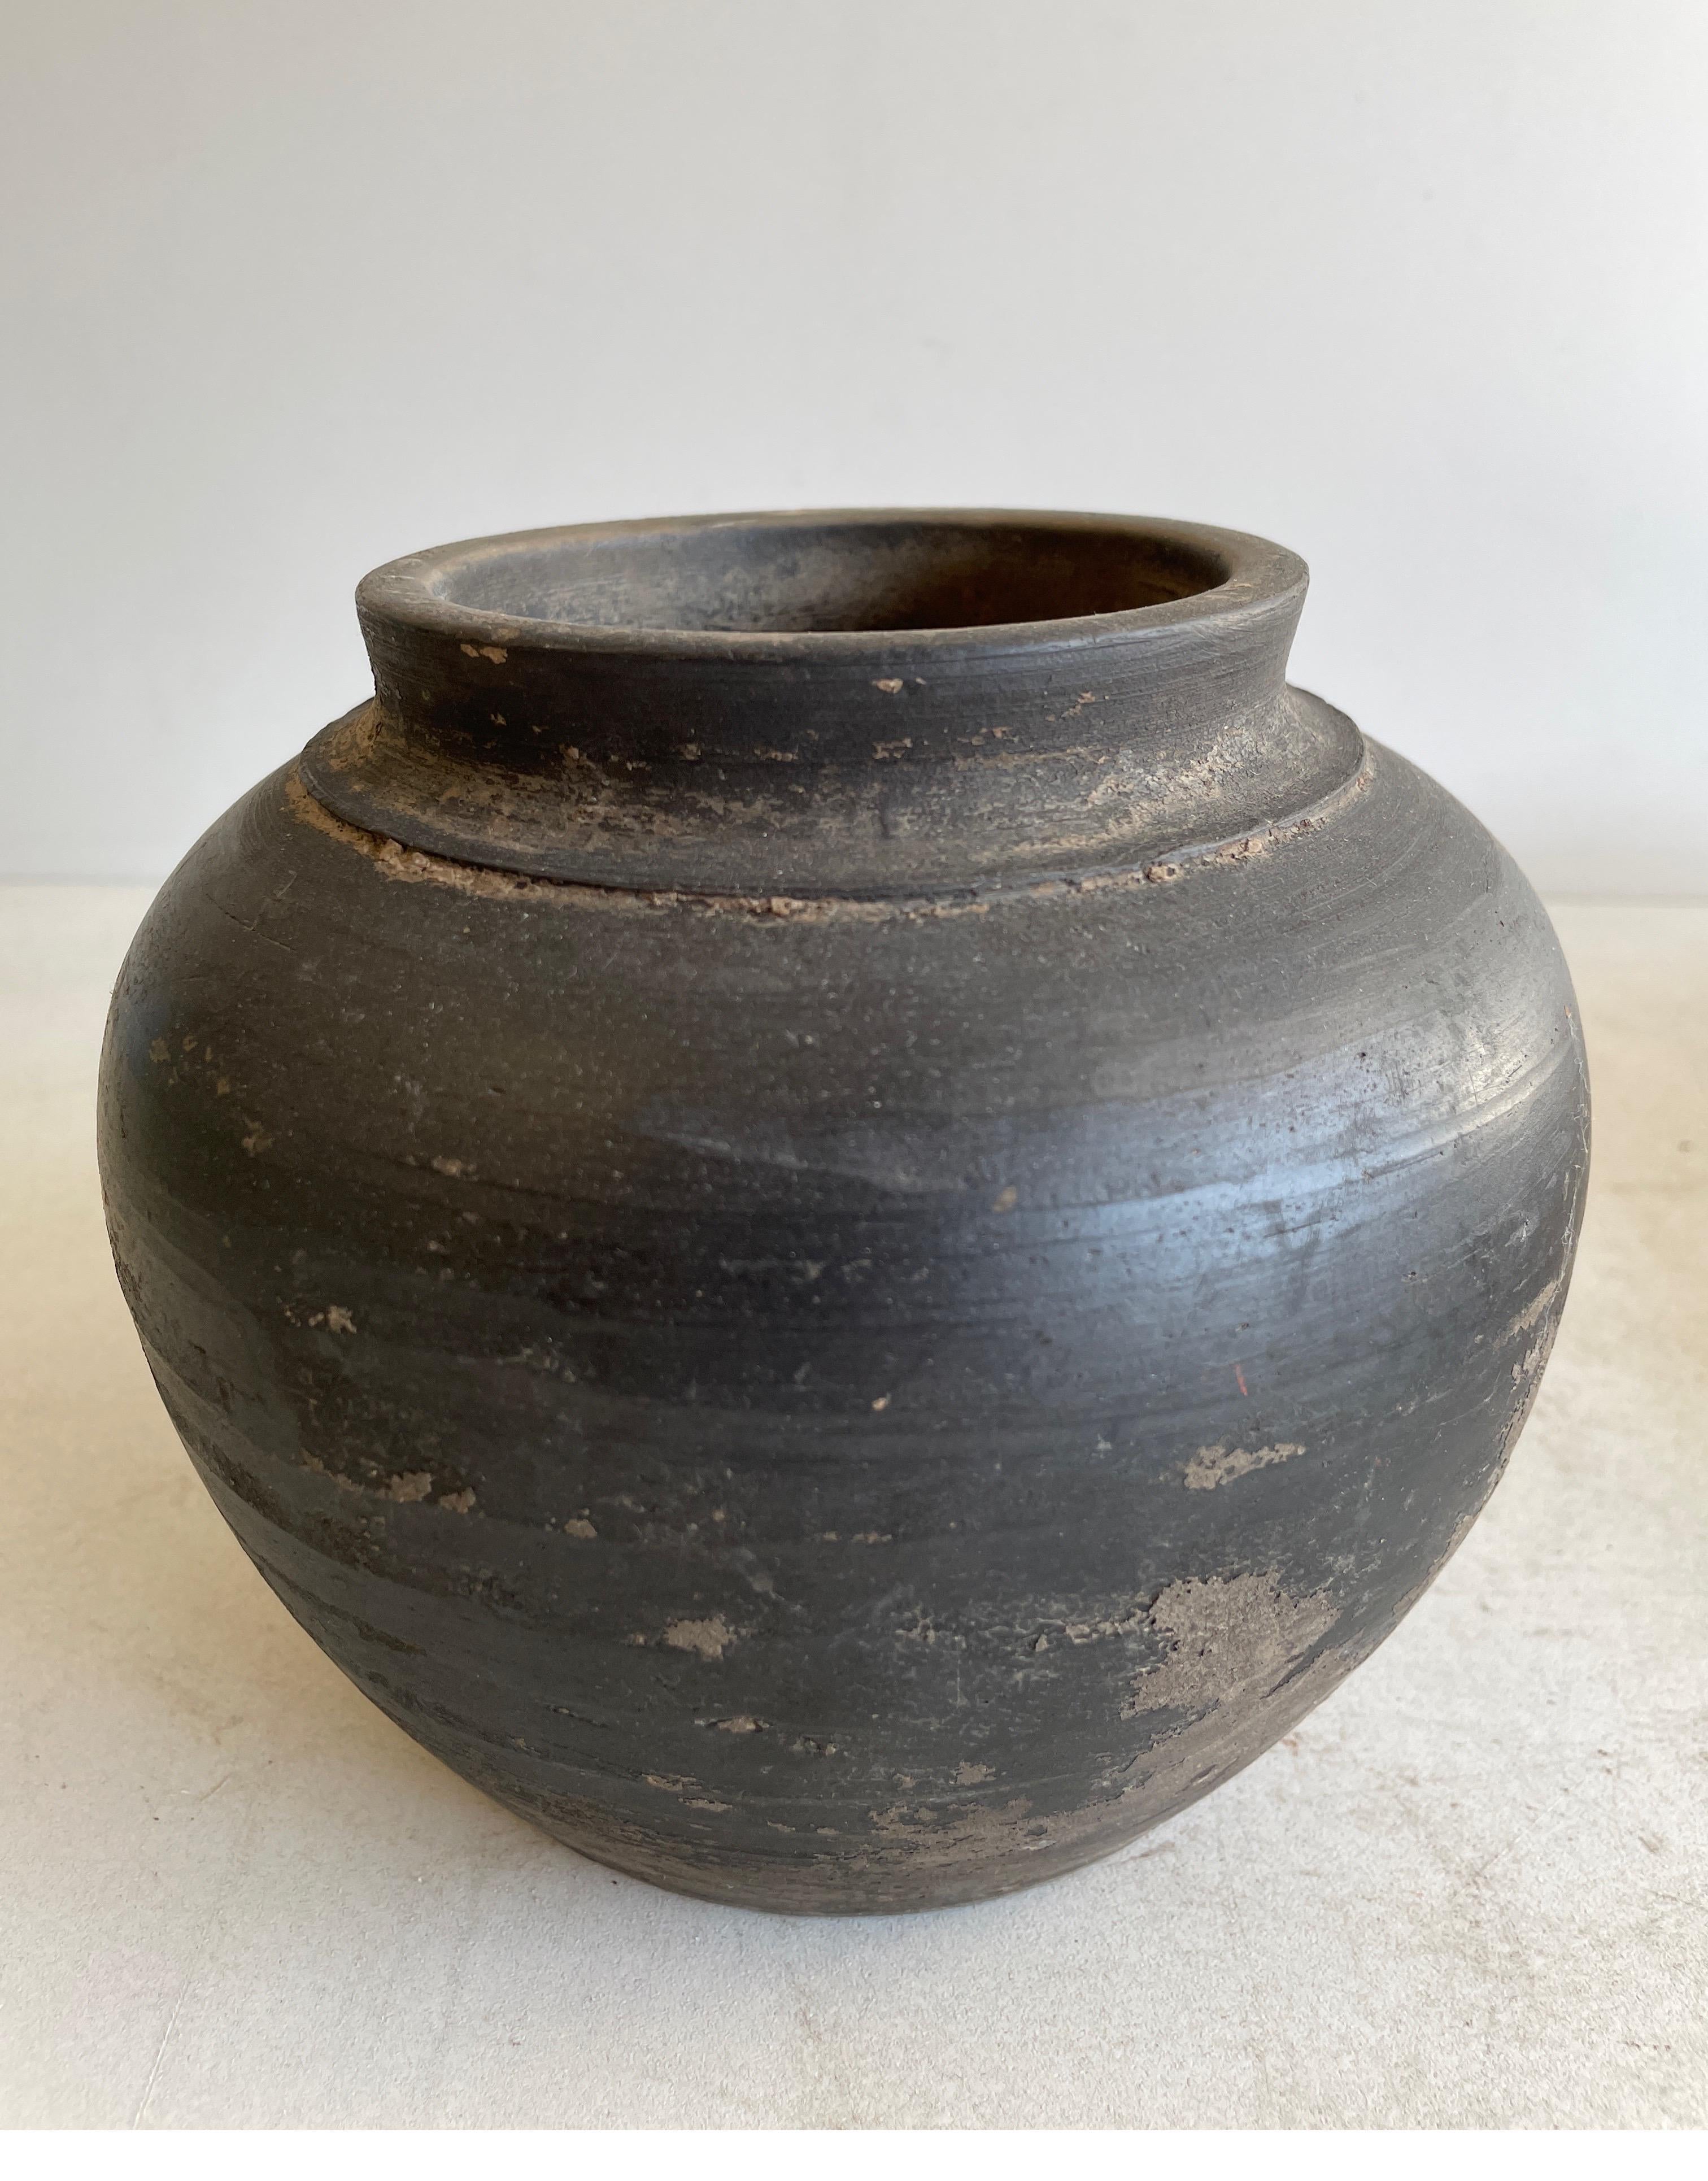 Vintage Matte oil pots pottery beautifully terracotta riche en caractère, ce pot à huile vintage ajoute juste la bonne quantité de texture + chaleur où vous en avez besoin. Superbe finition mate avec des accents chauds de terre cuite et des tons de